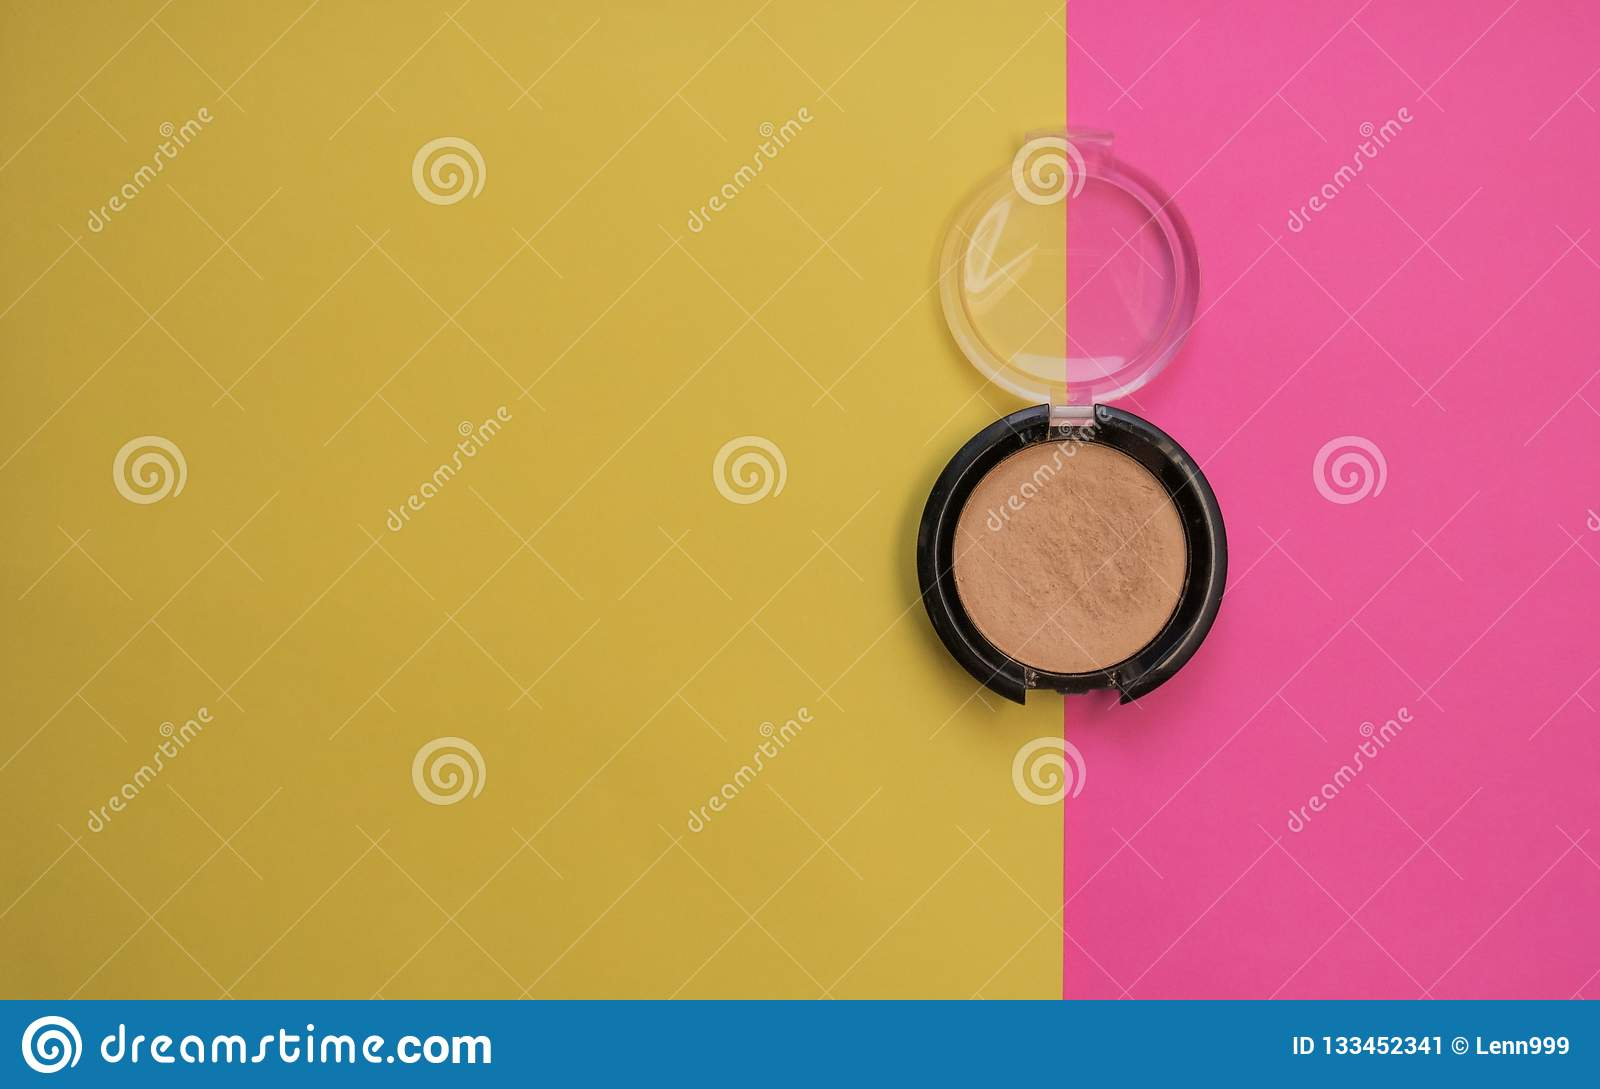 Pink And Yellow Eye Makeup Eyeshadow Yellow Eyeshadow Bright Background Stock Image Image